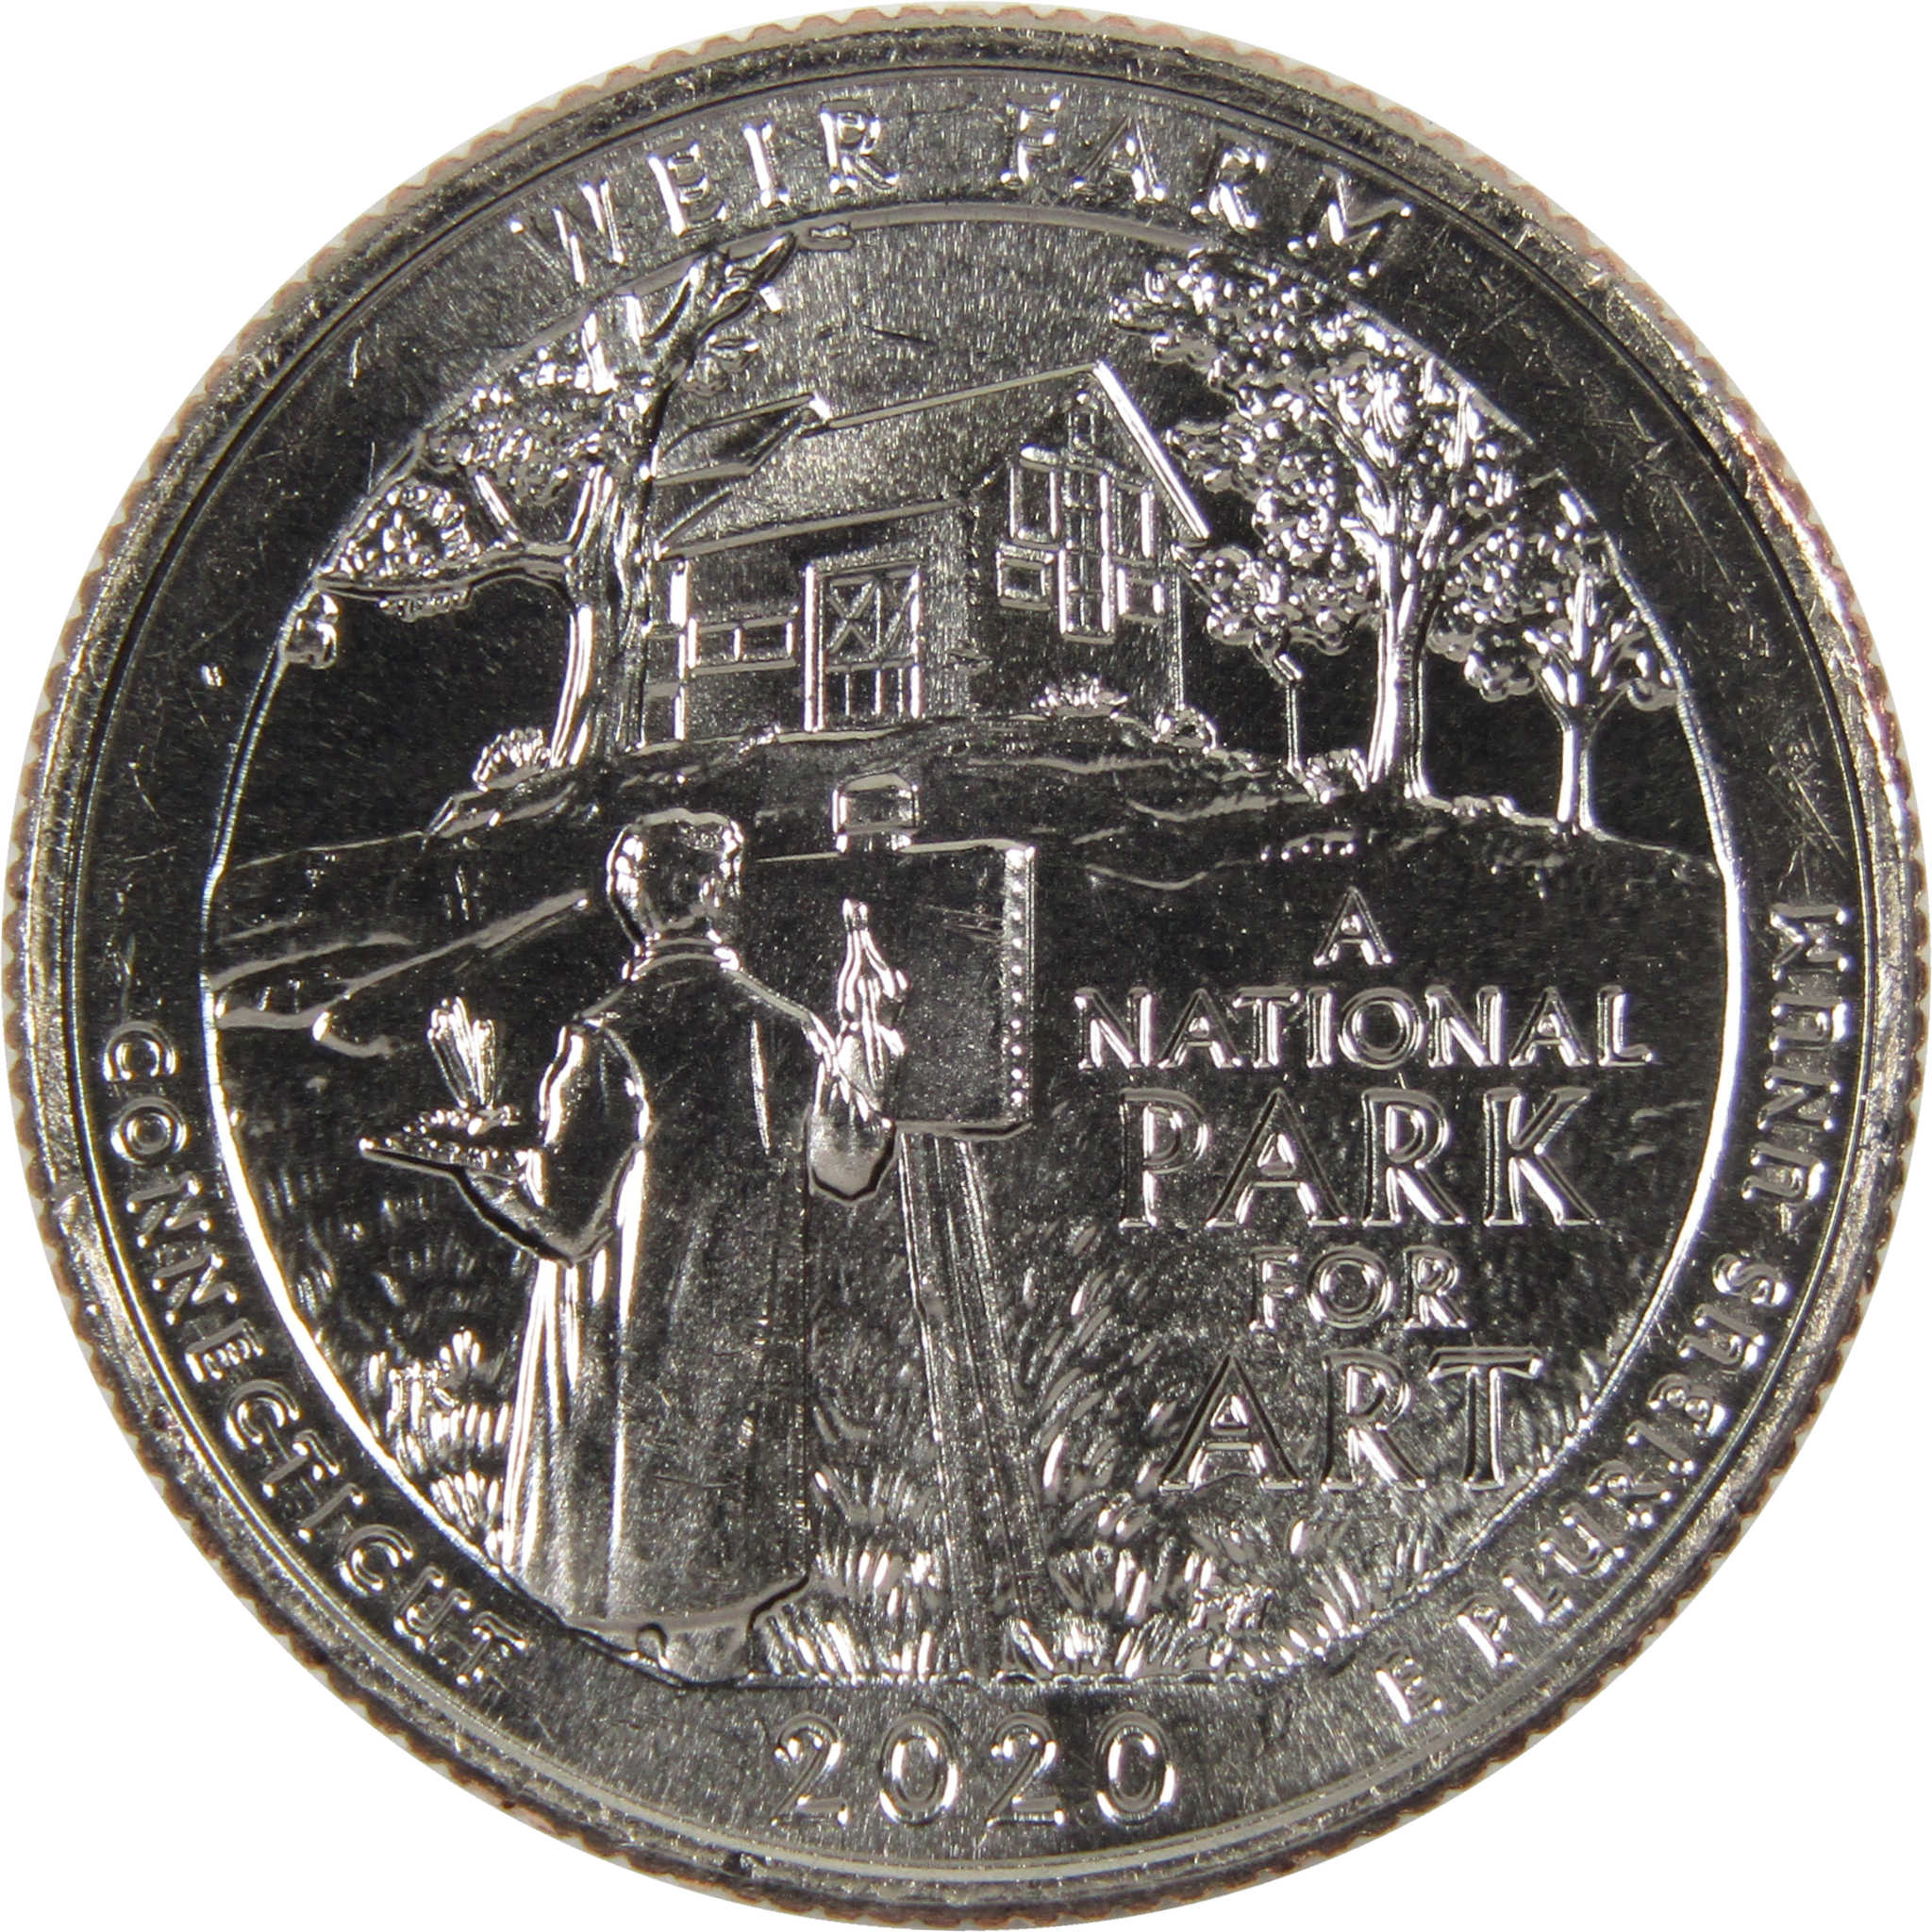 2020 D Weir Farm NHS National Park Quarter BU Uncirculated Clad Coin